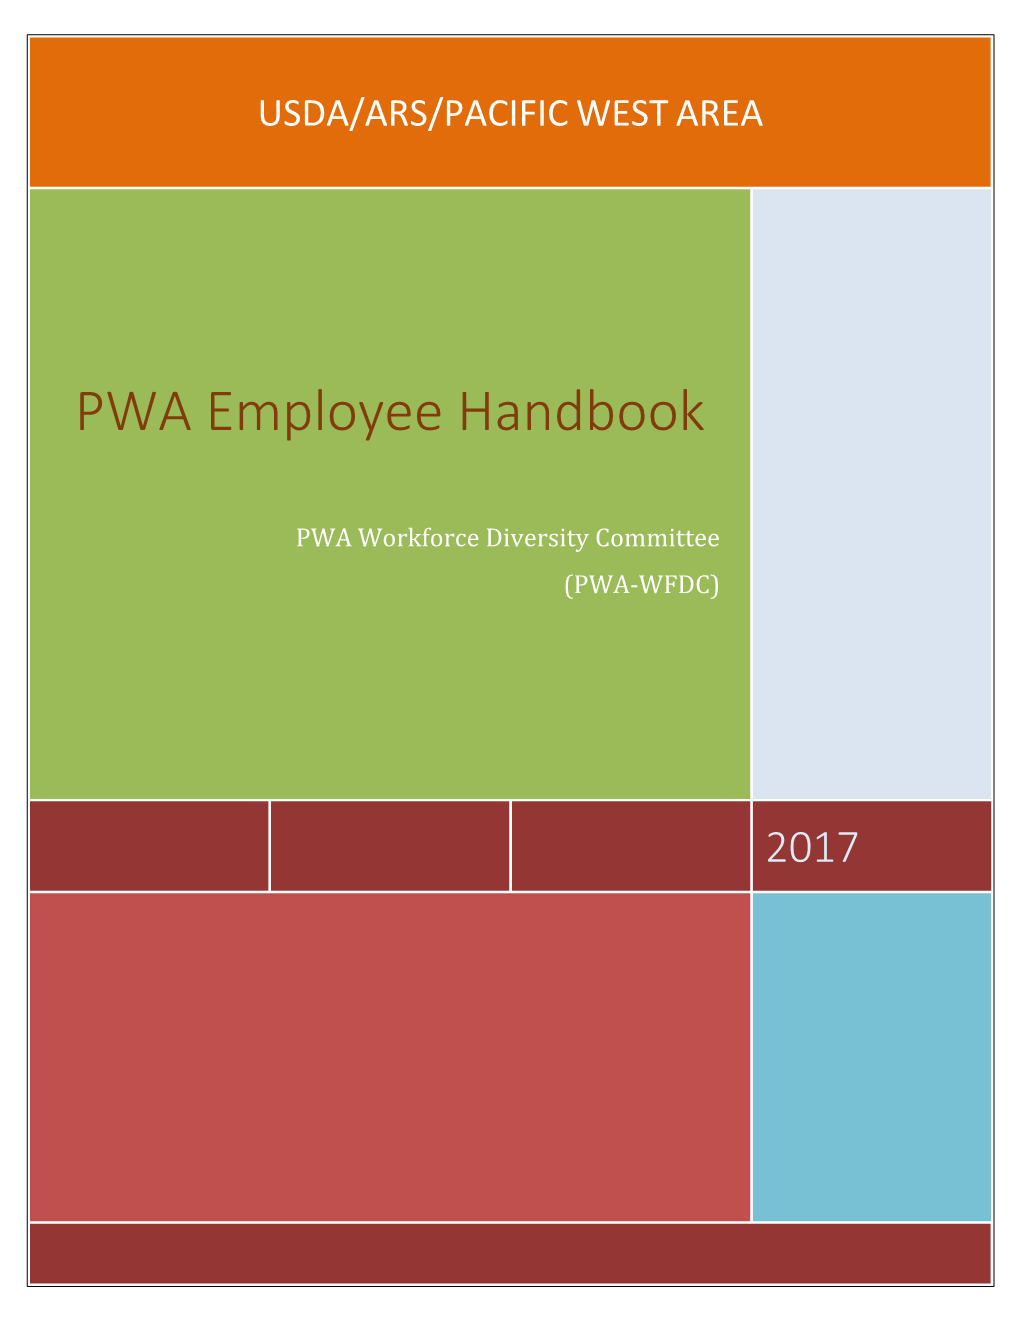 PWA Employee Handbook